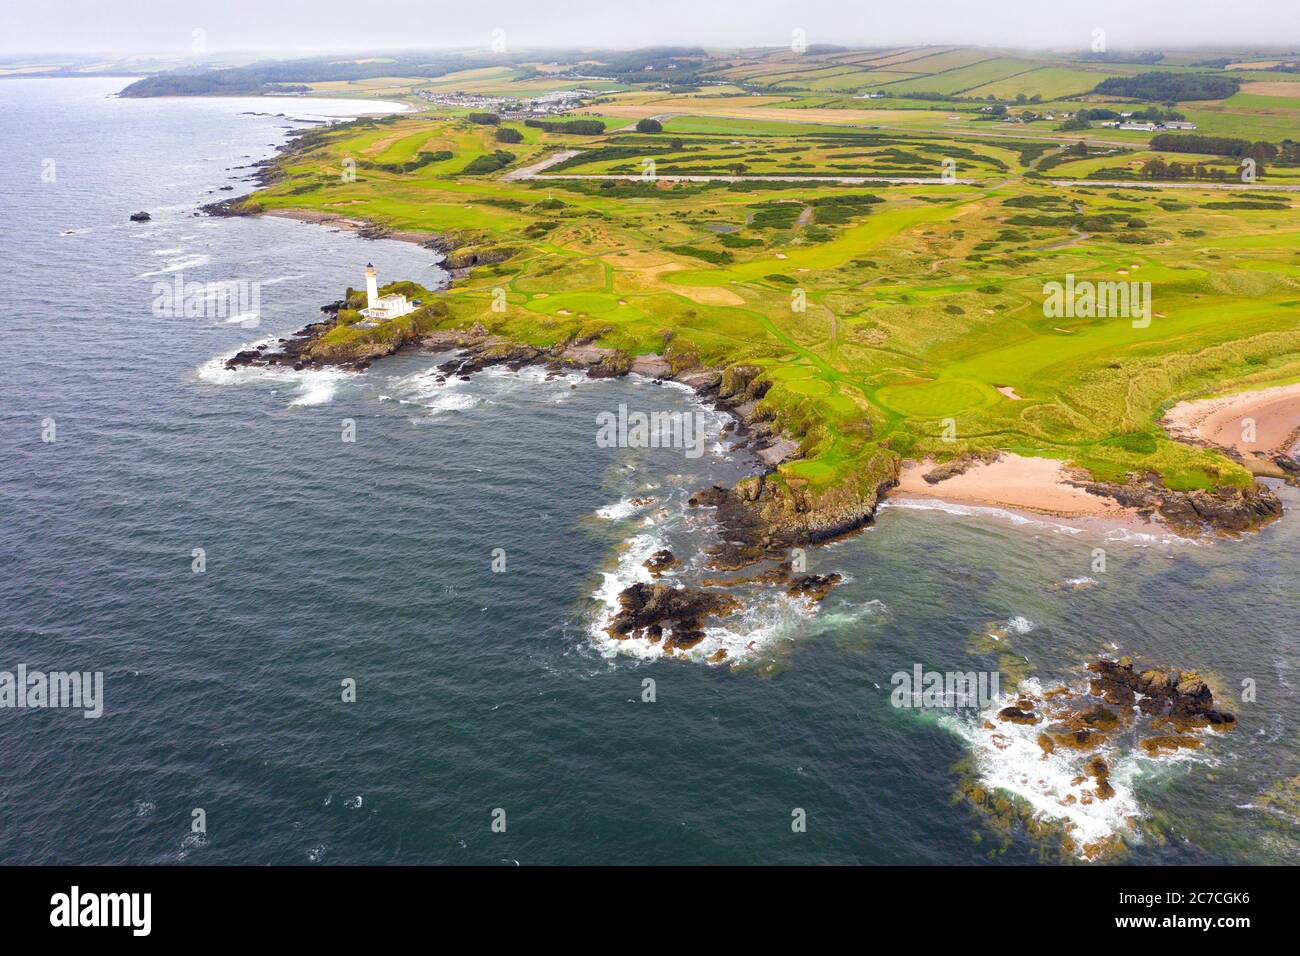 Vista aerea dal drone del campo da golf Ailsa al campo da golf Trump Turnberry nell'Ayrshire, Scozia, Regno Unito Foto Stock